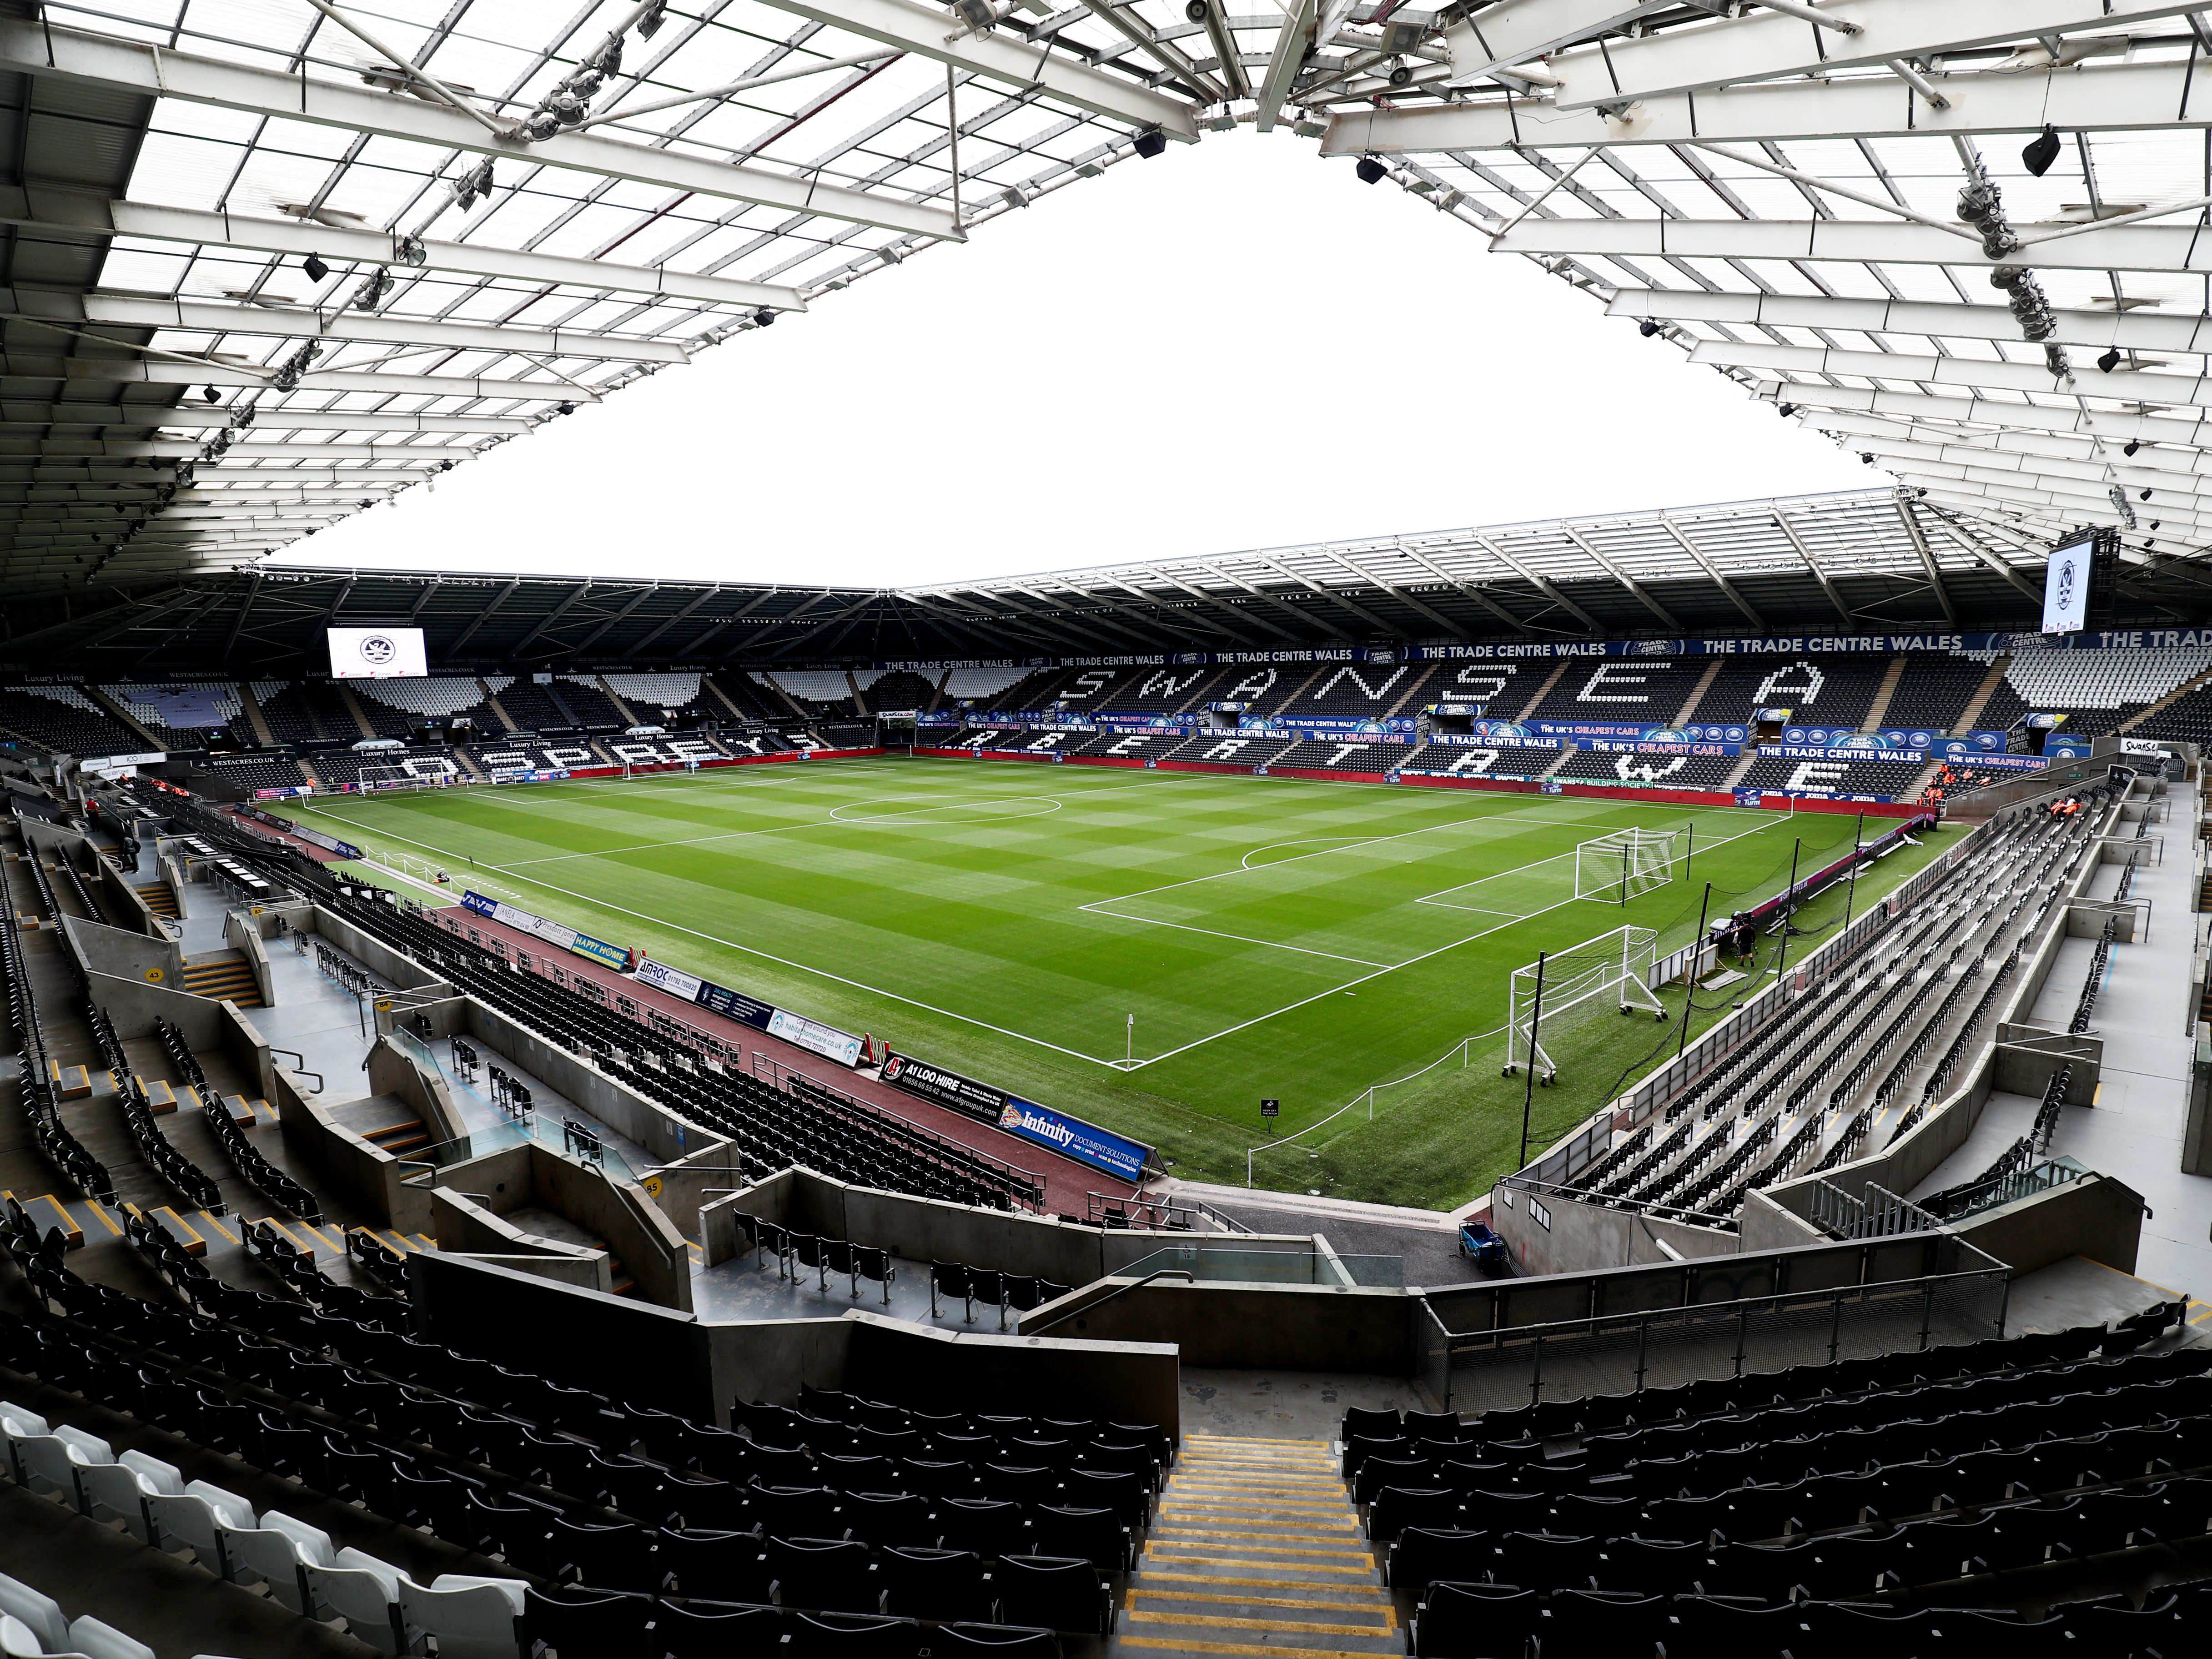 The Swansea.com Stadium